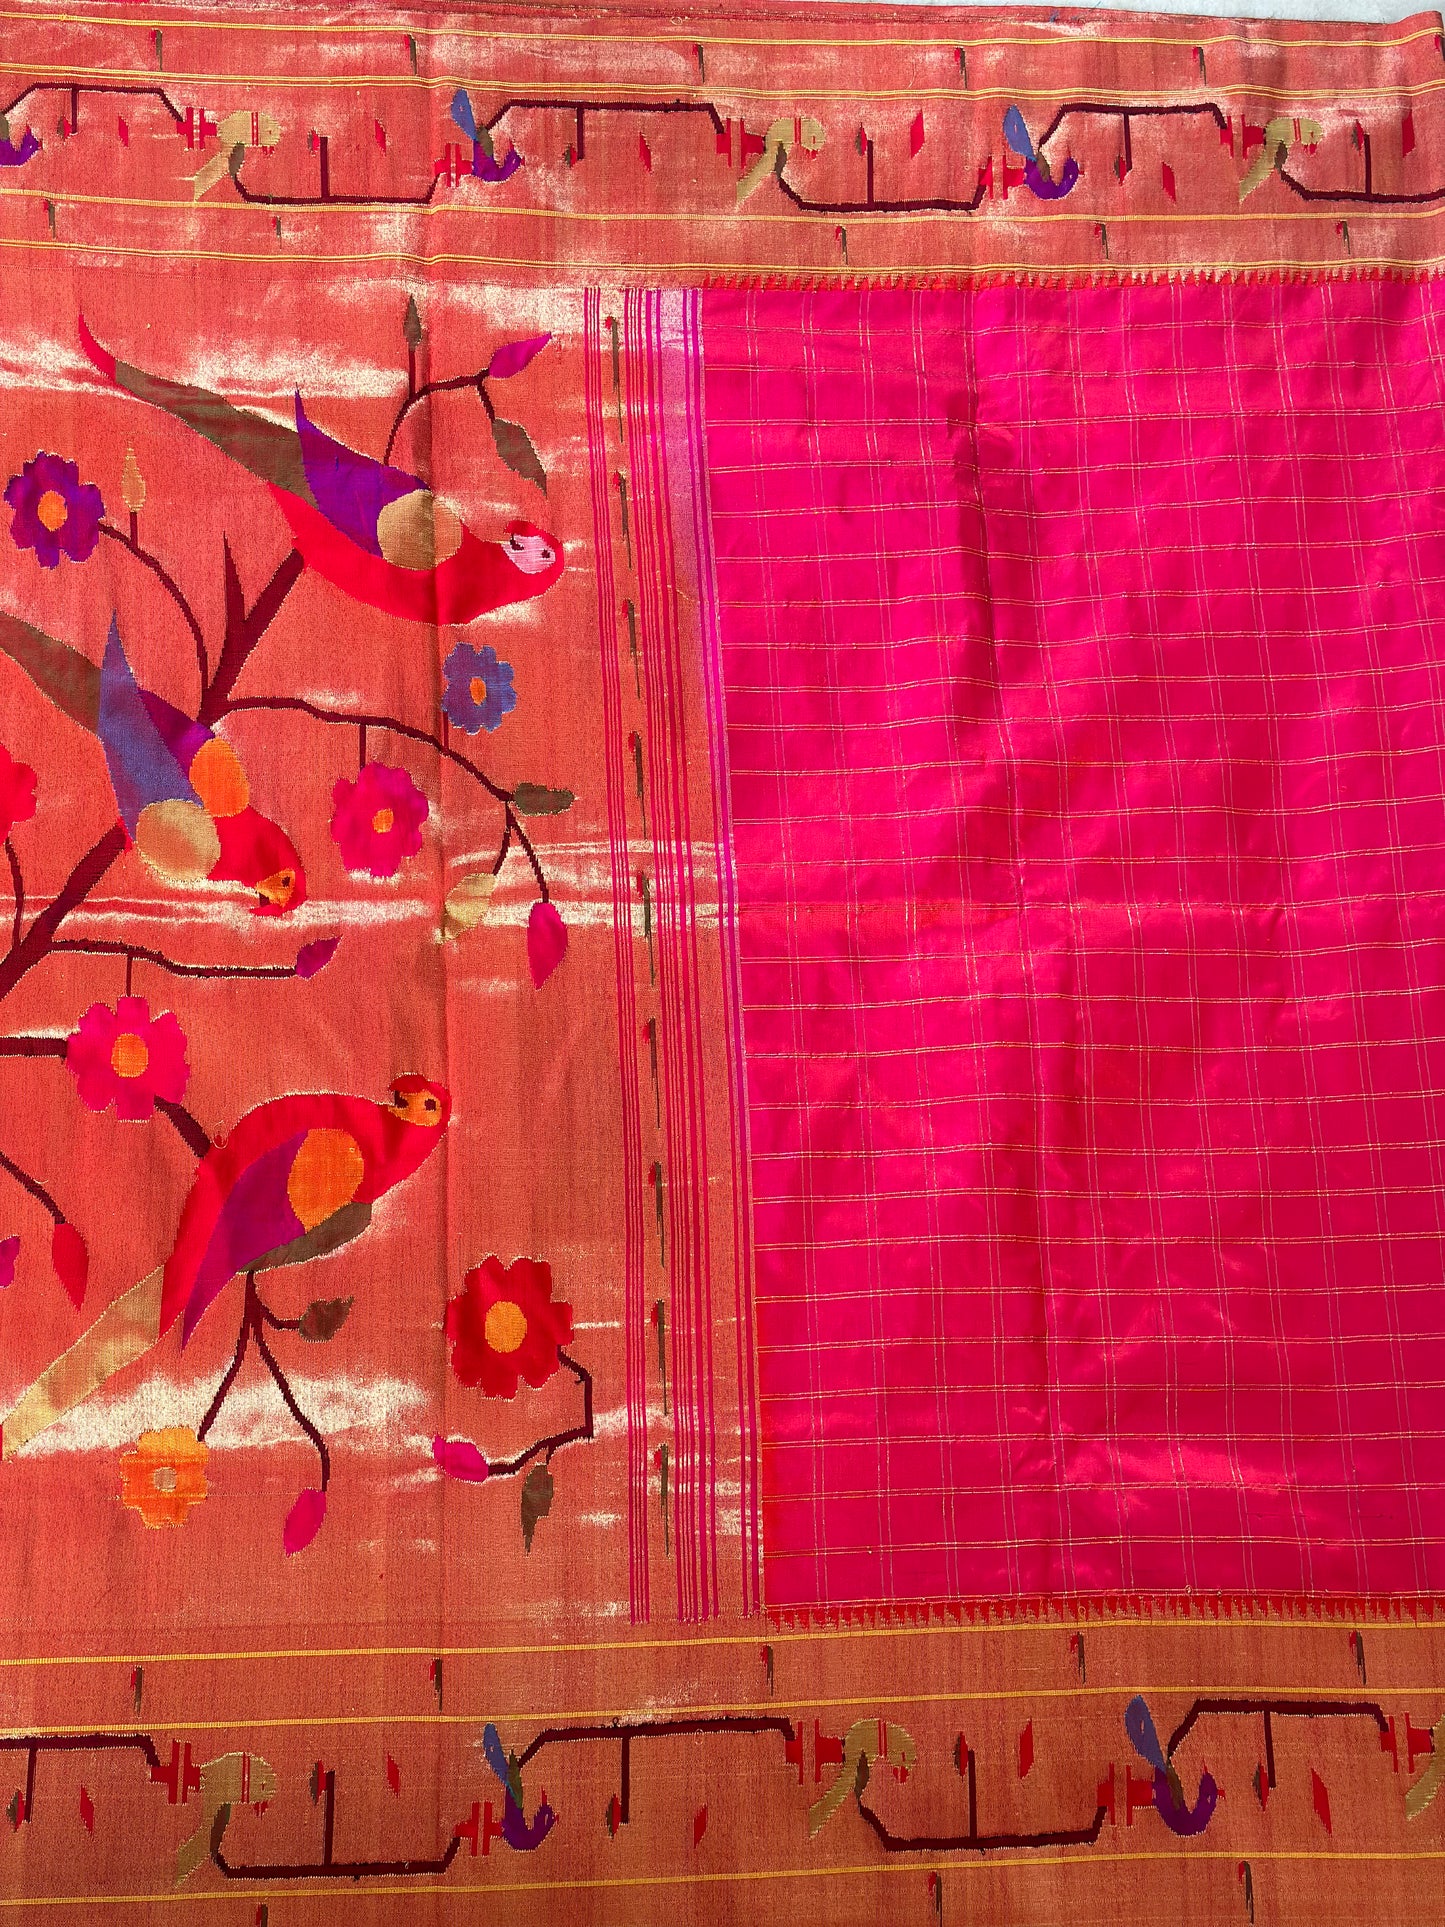 Hot pink pure paithani saree | sarees in USA | handloom saree